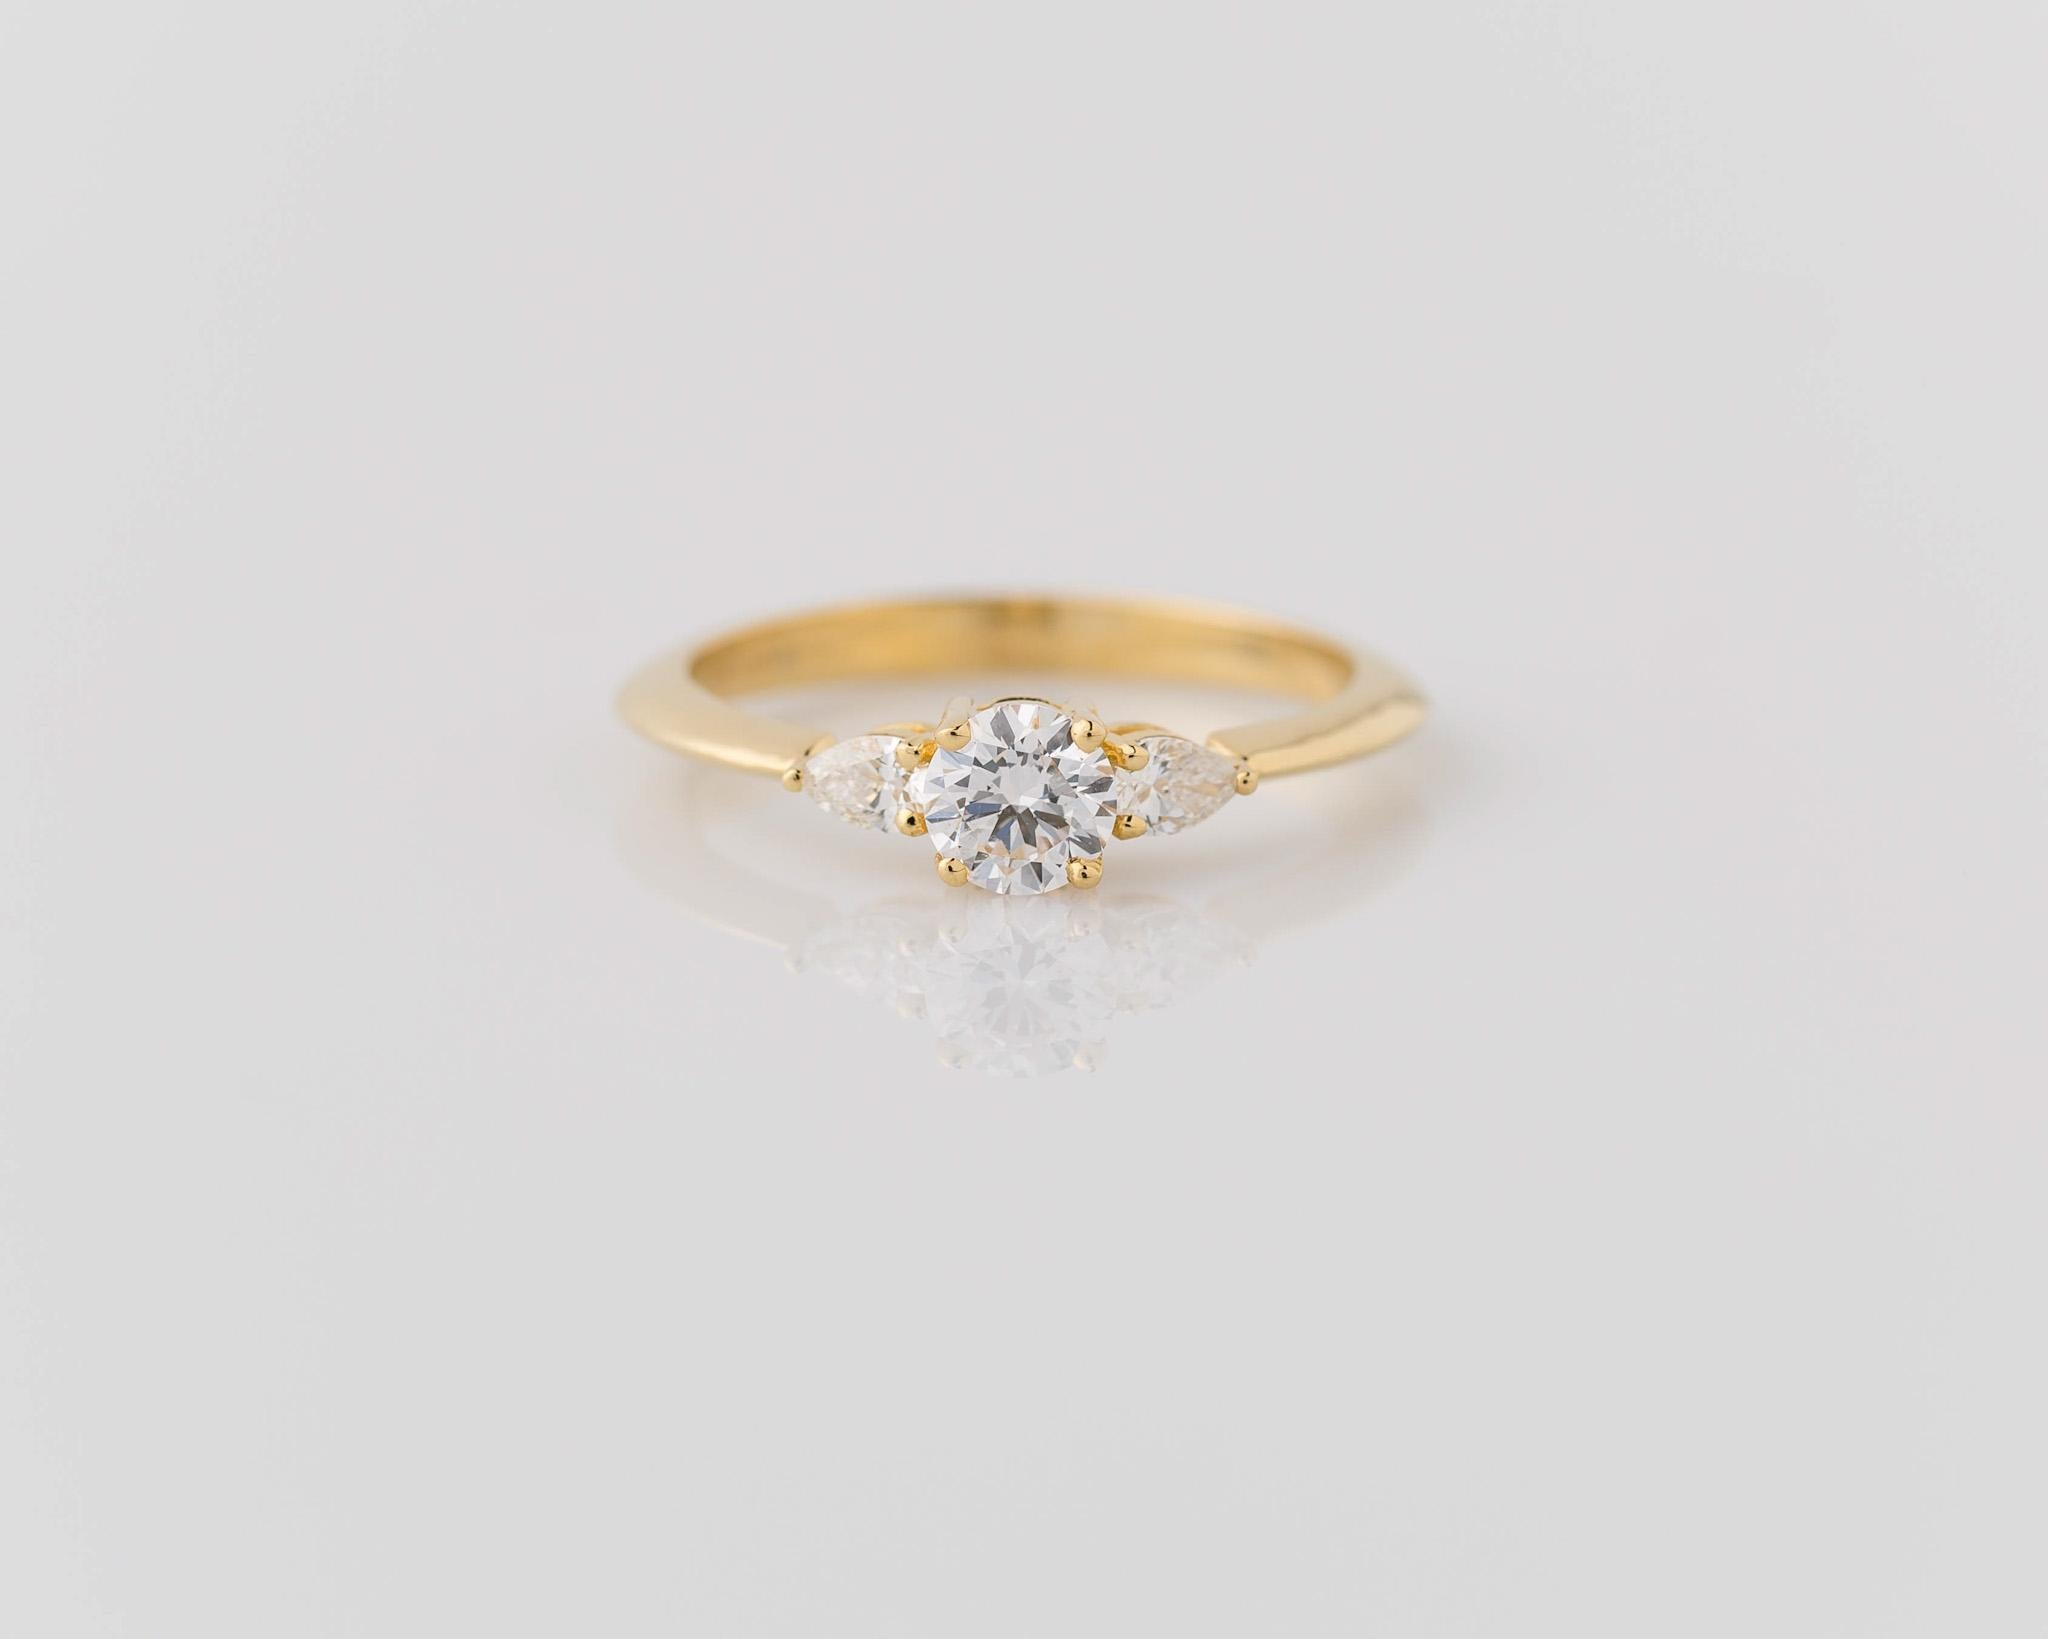 Cette délicate bague de fiançailles en or jaune 14k à 3 pierres et diamants ronds certifiés GIA est d'une grande élégance. Son design réduit ajoute à son charme, ce qui le rend parfait pour être porté au quotidien. Chaque diamant certifié GIA brille